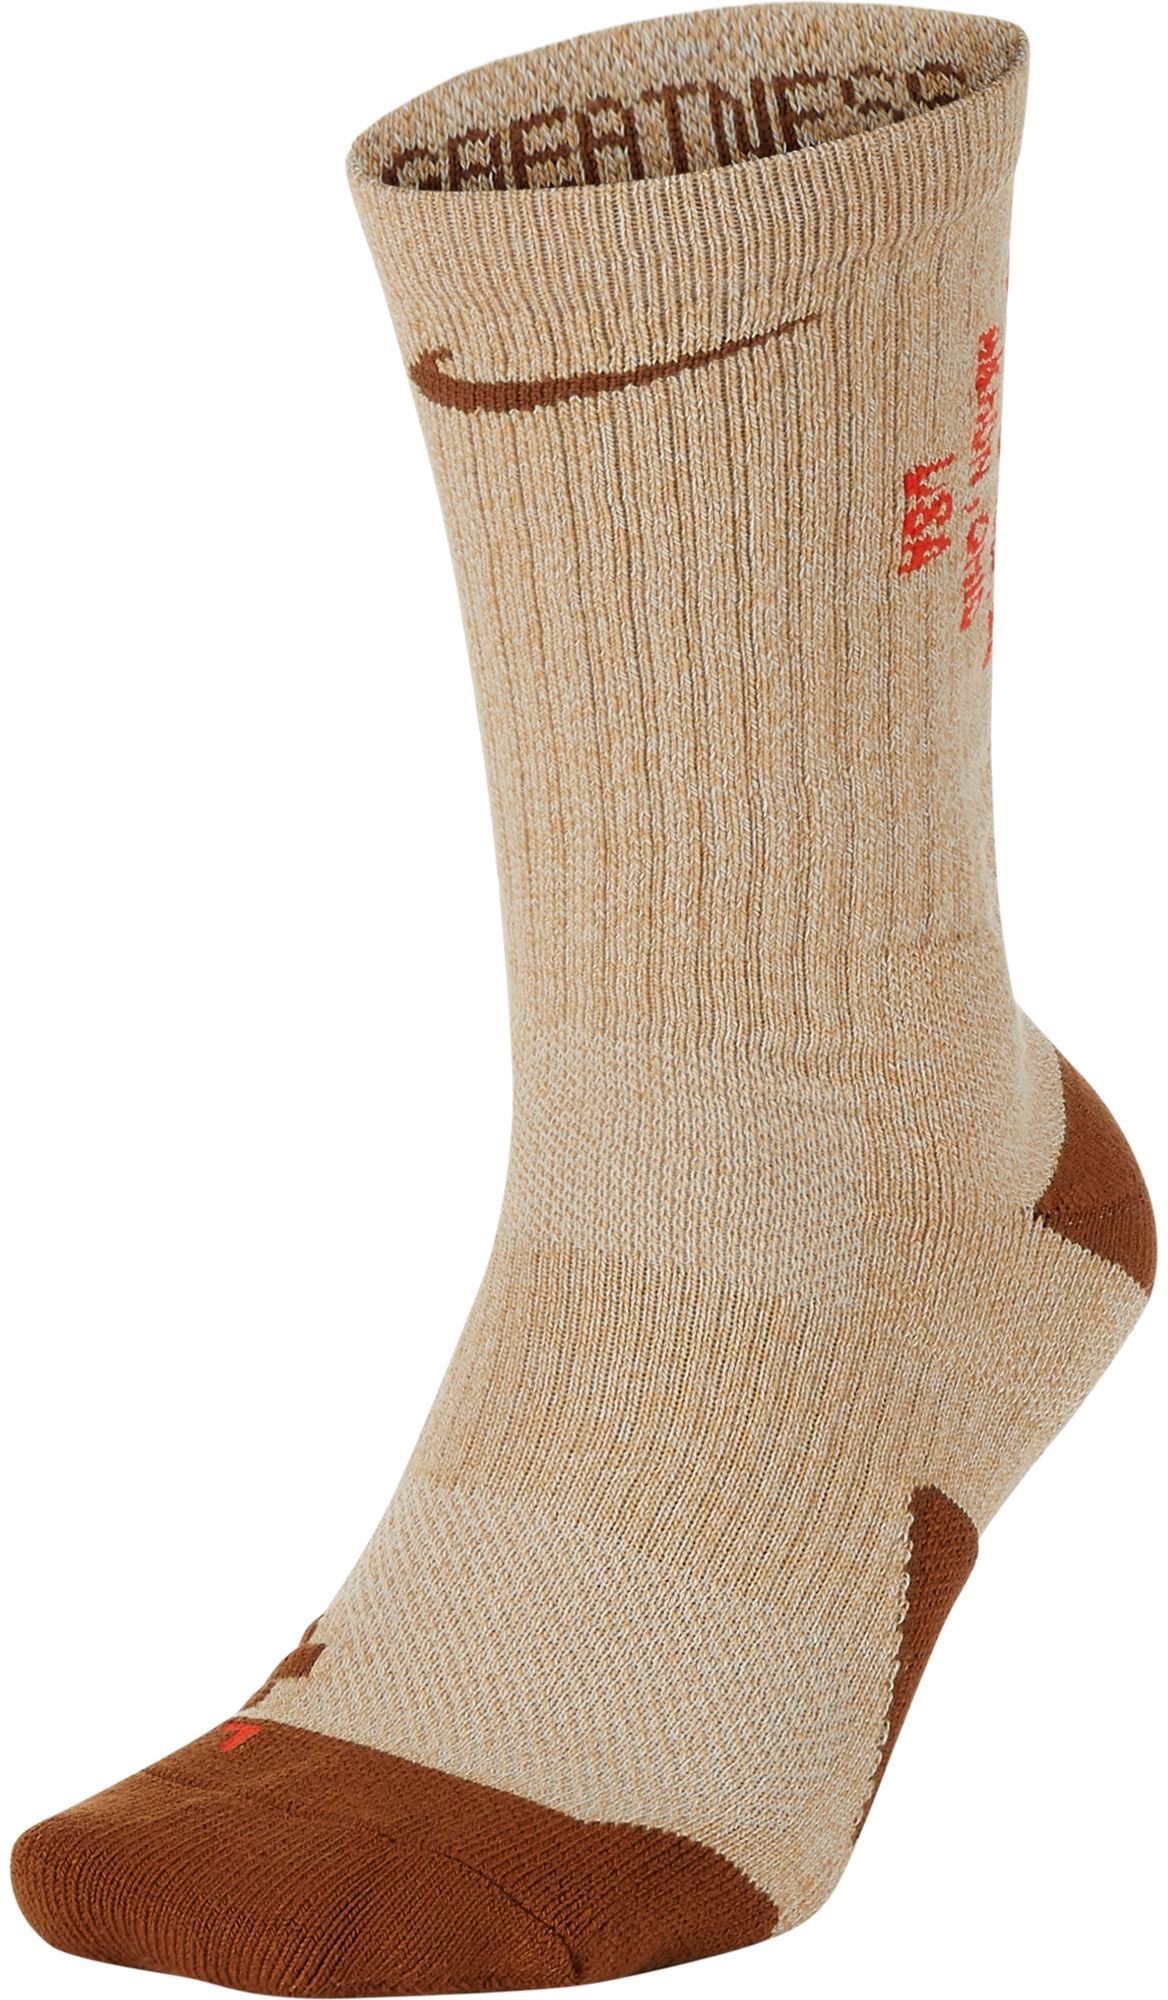 white and gold nike socks